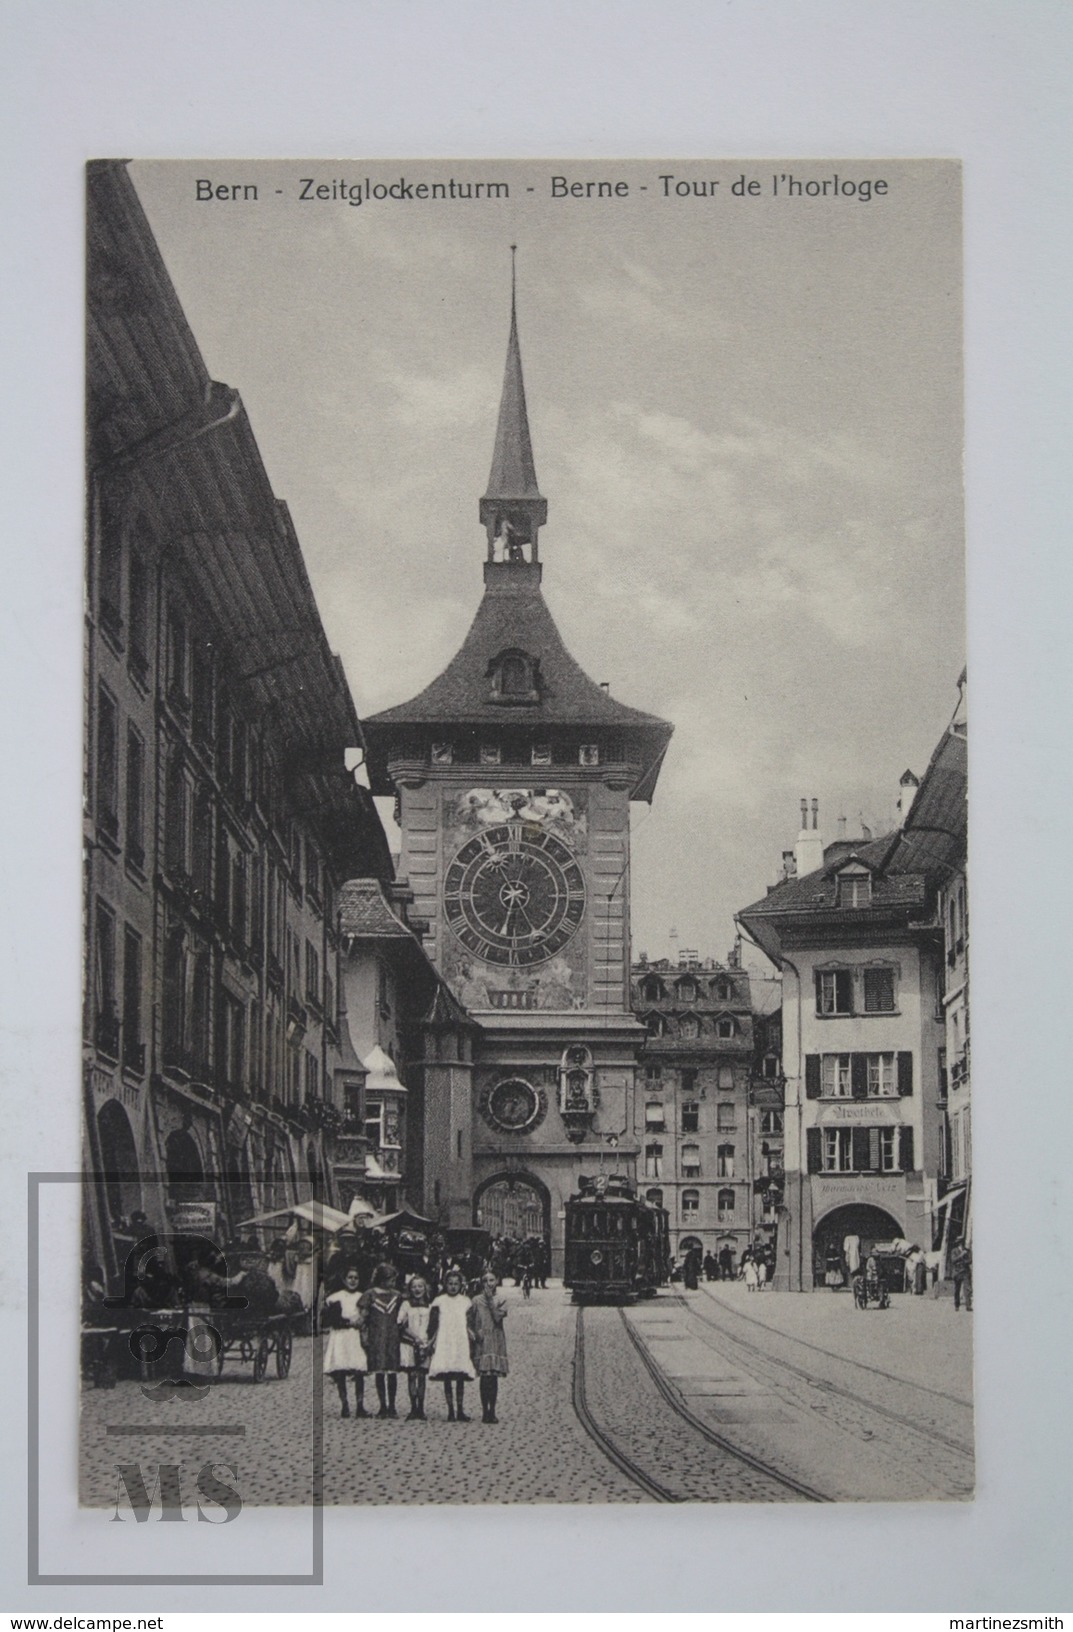 Old Postcard Switzerland - Bern - Zeitglockenturm - Tour De L'Horologe - Tramway And Children's - Animated - Berne